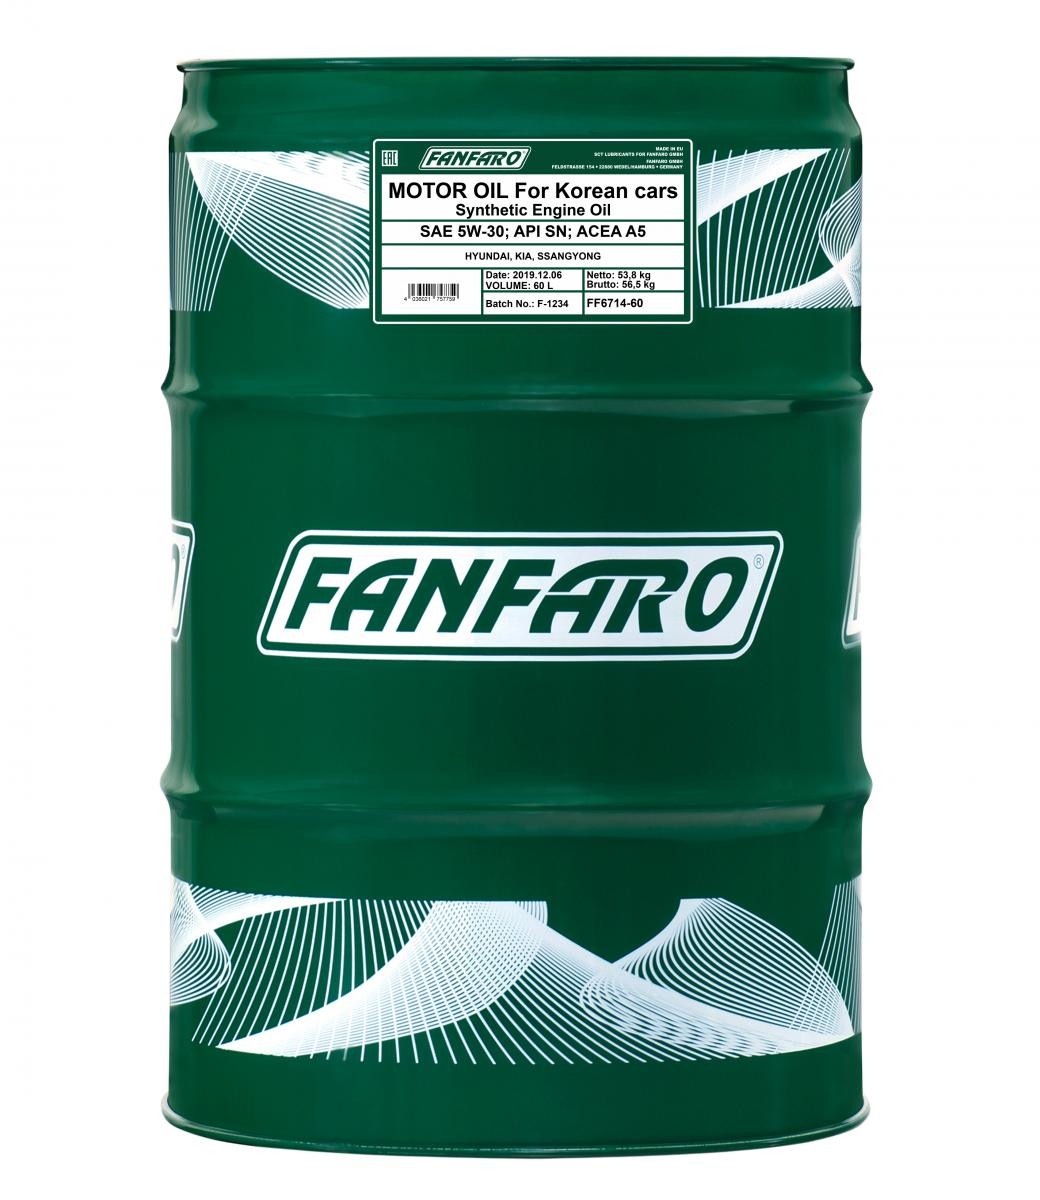 Car oil FANFARO 5W-30, 60l, Synthetic Oil longlife FF6714-60